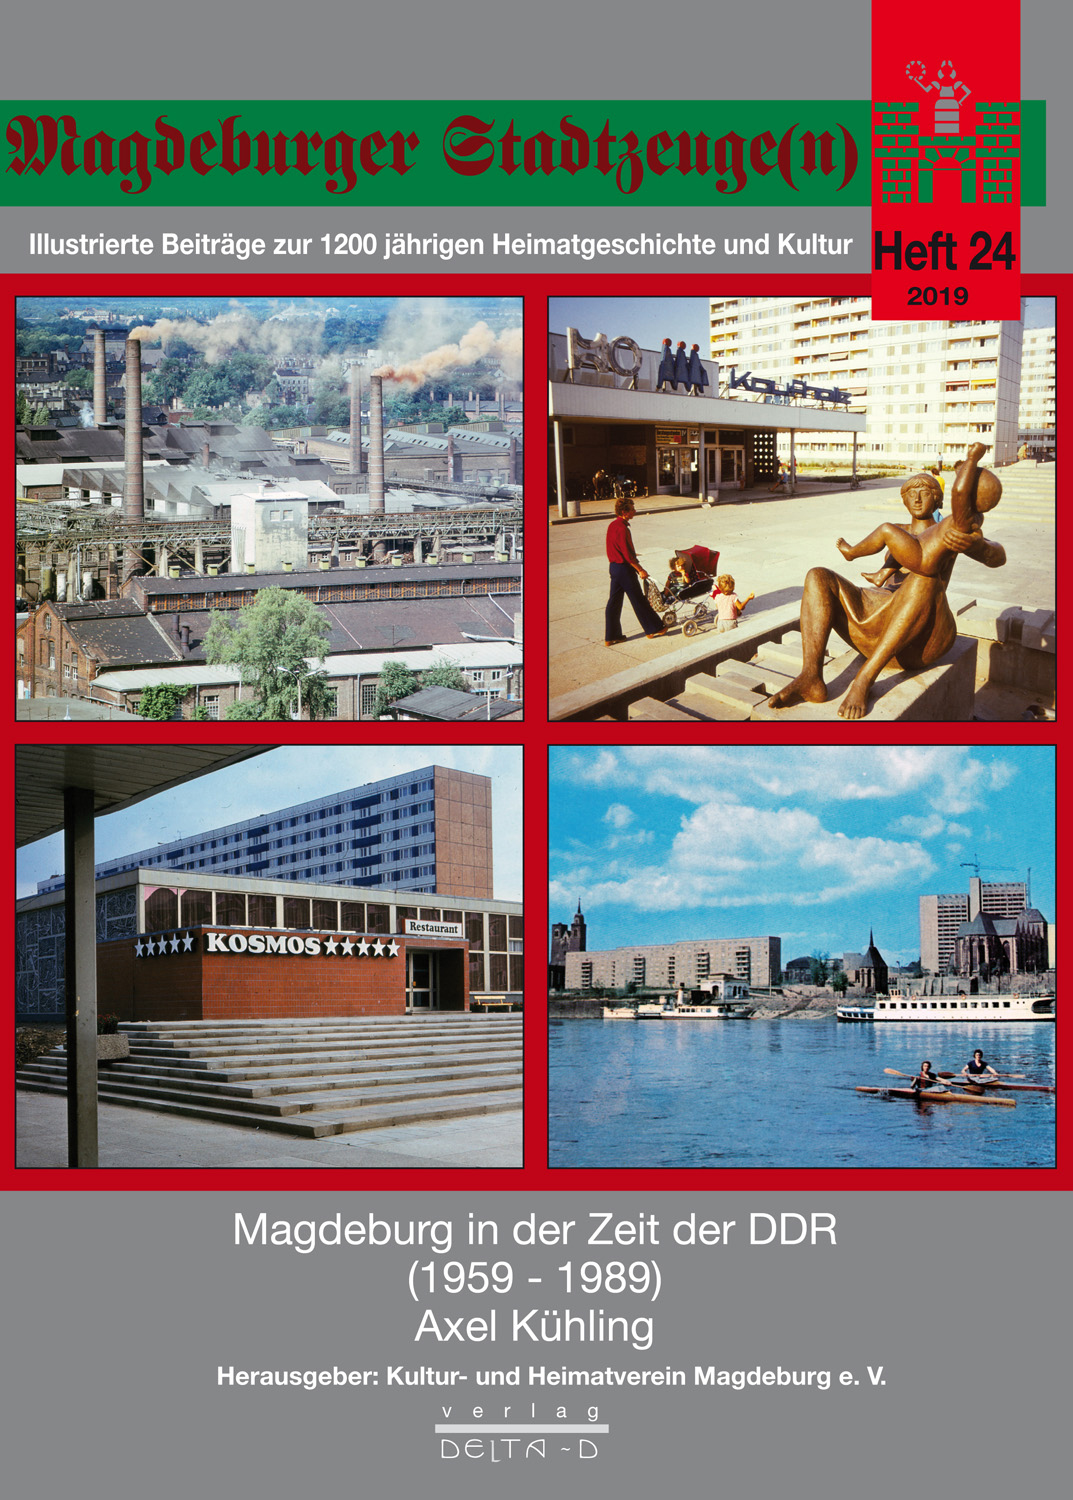 Magdeburger Stadtzeuge(n) Teil 24